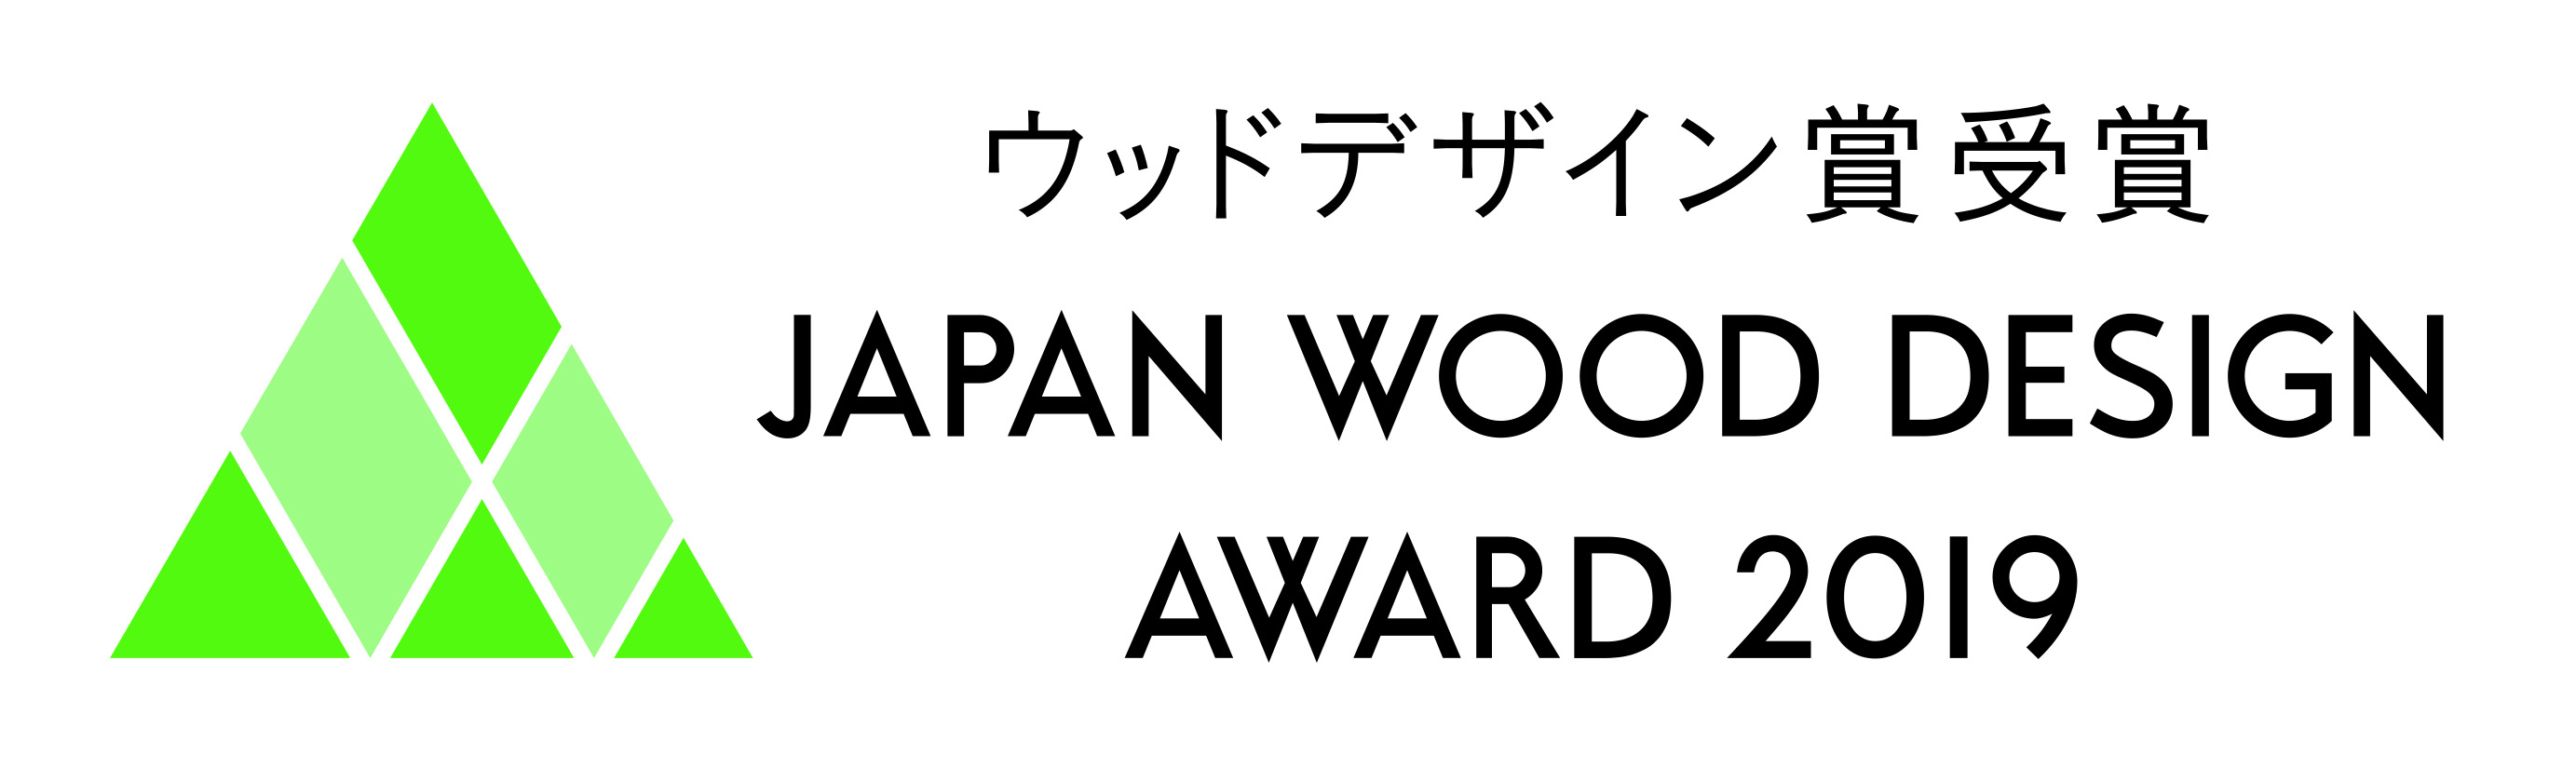 ウッドデザイン賞のロゴイメージ